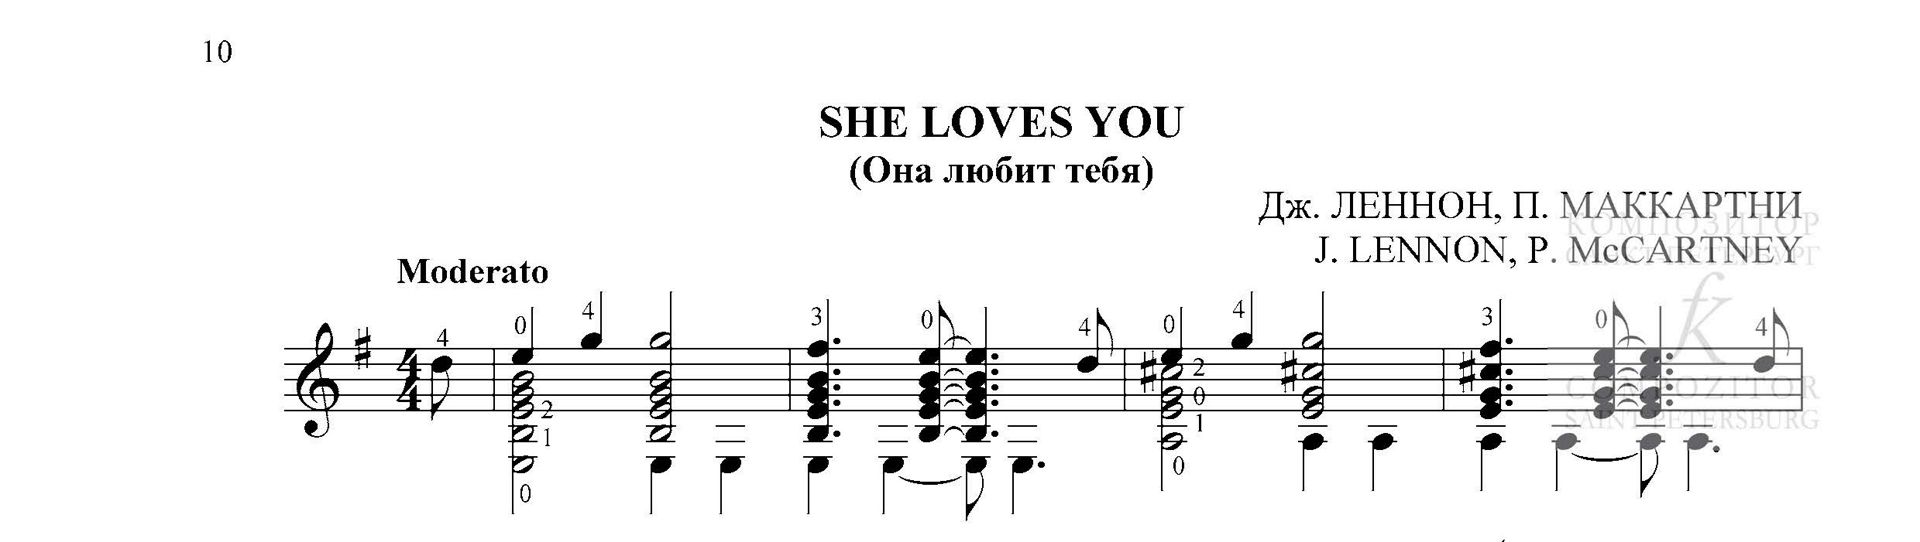 Дж. Леннон, П. Маккартни. SHE LOVES YOU (Она любит тебя). Переложение для гитары